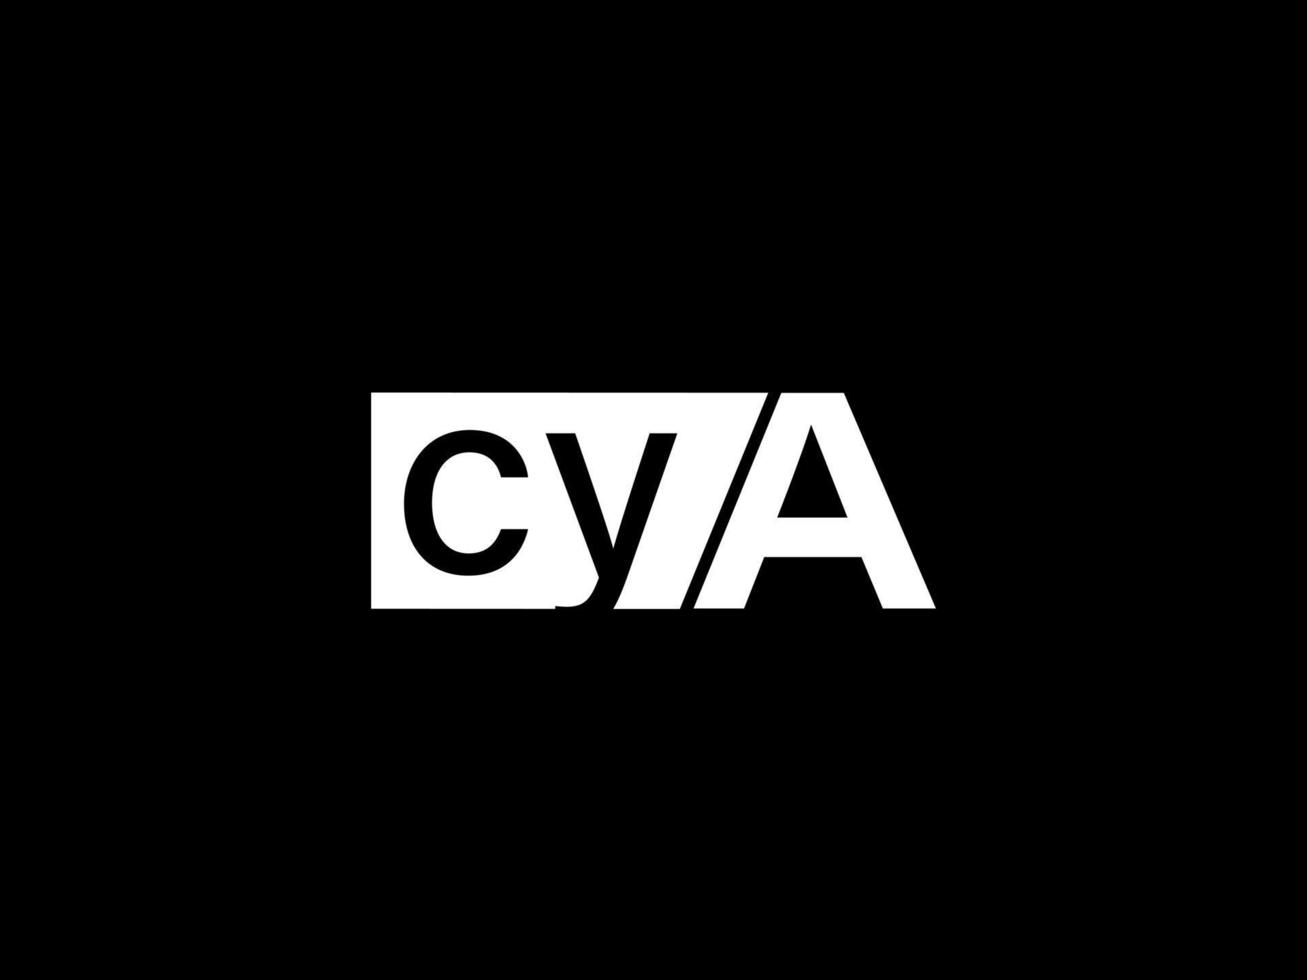 logotipo cya e arte vetorial de design gráfico, ícones isolados em fundo preto vetor